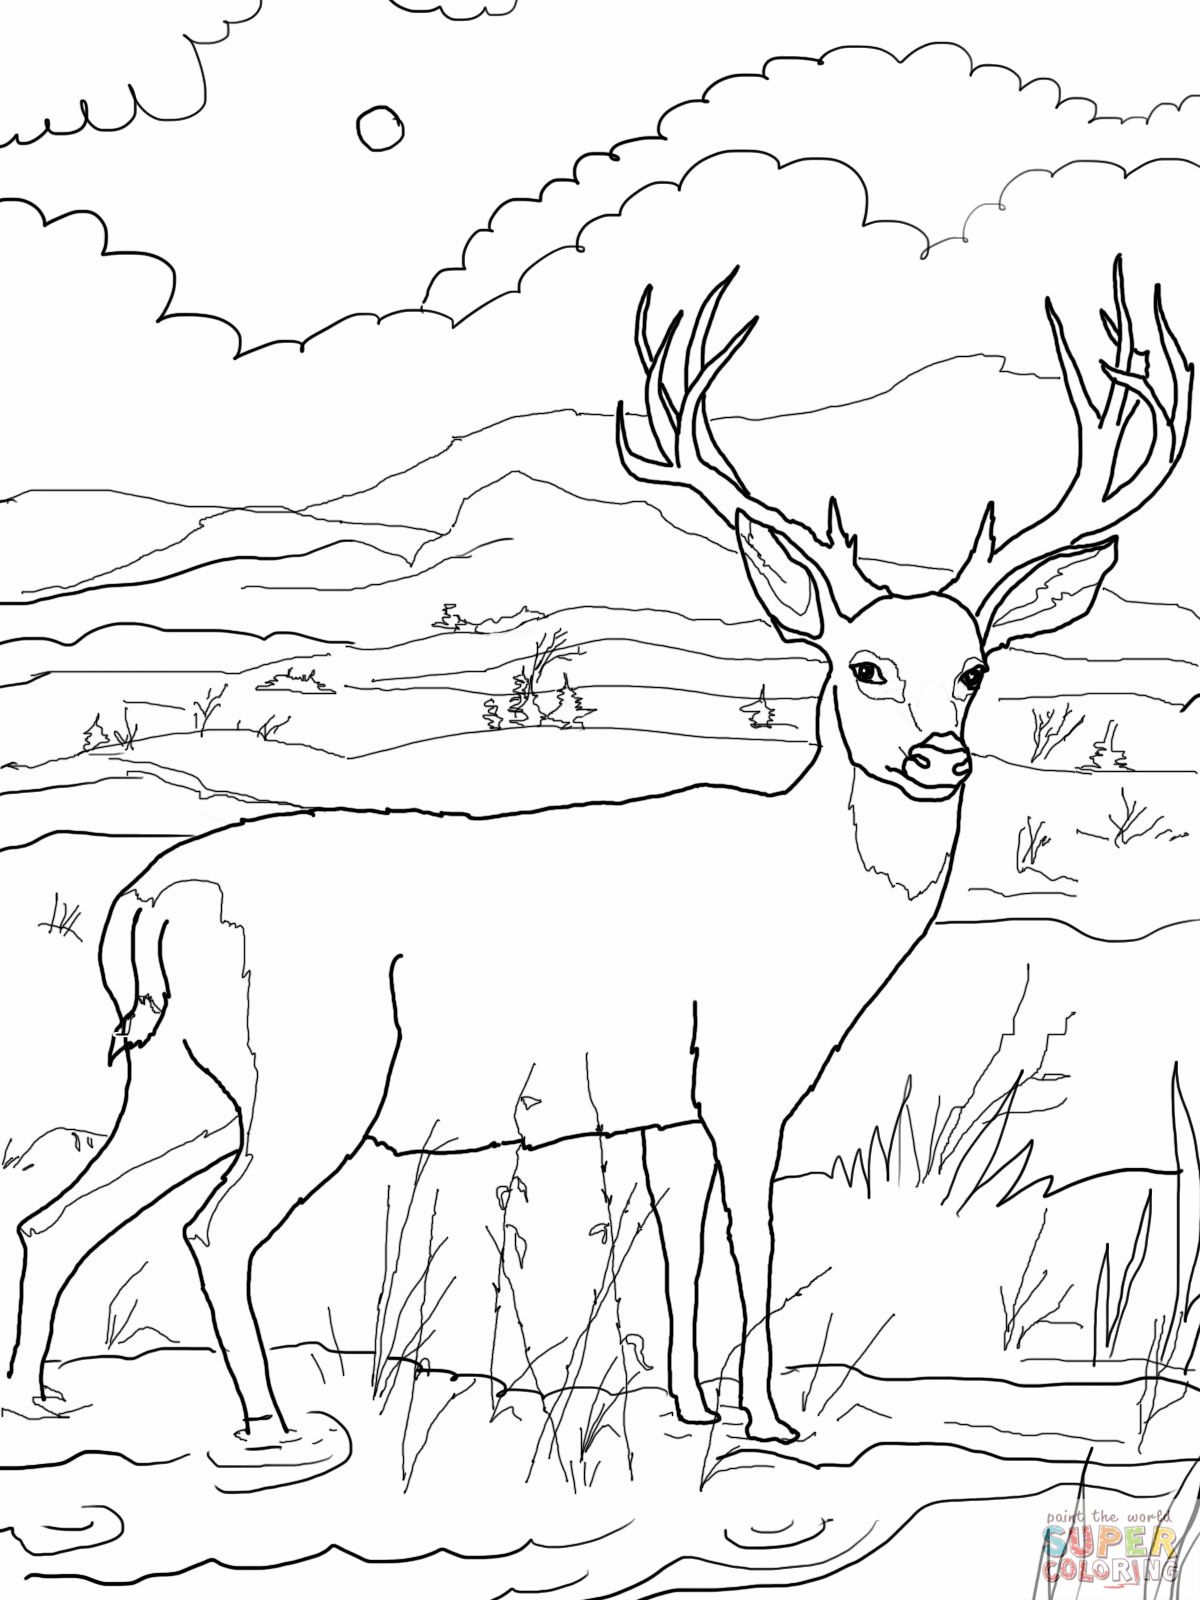 deer-coloring-page-blacktail-mule-deer-coloring-online-super